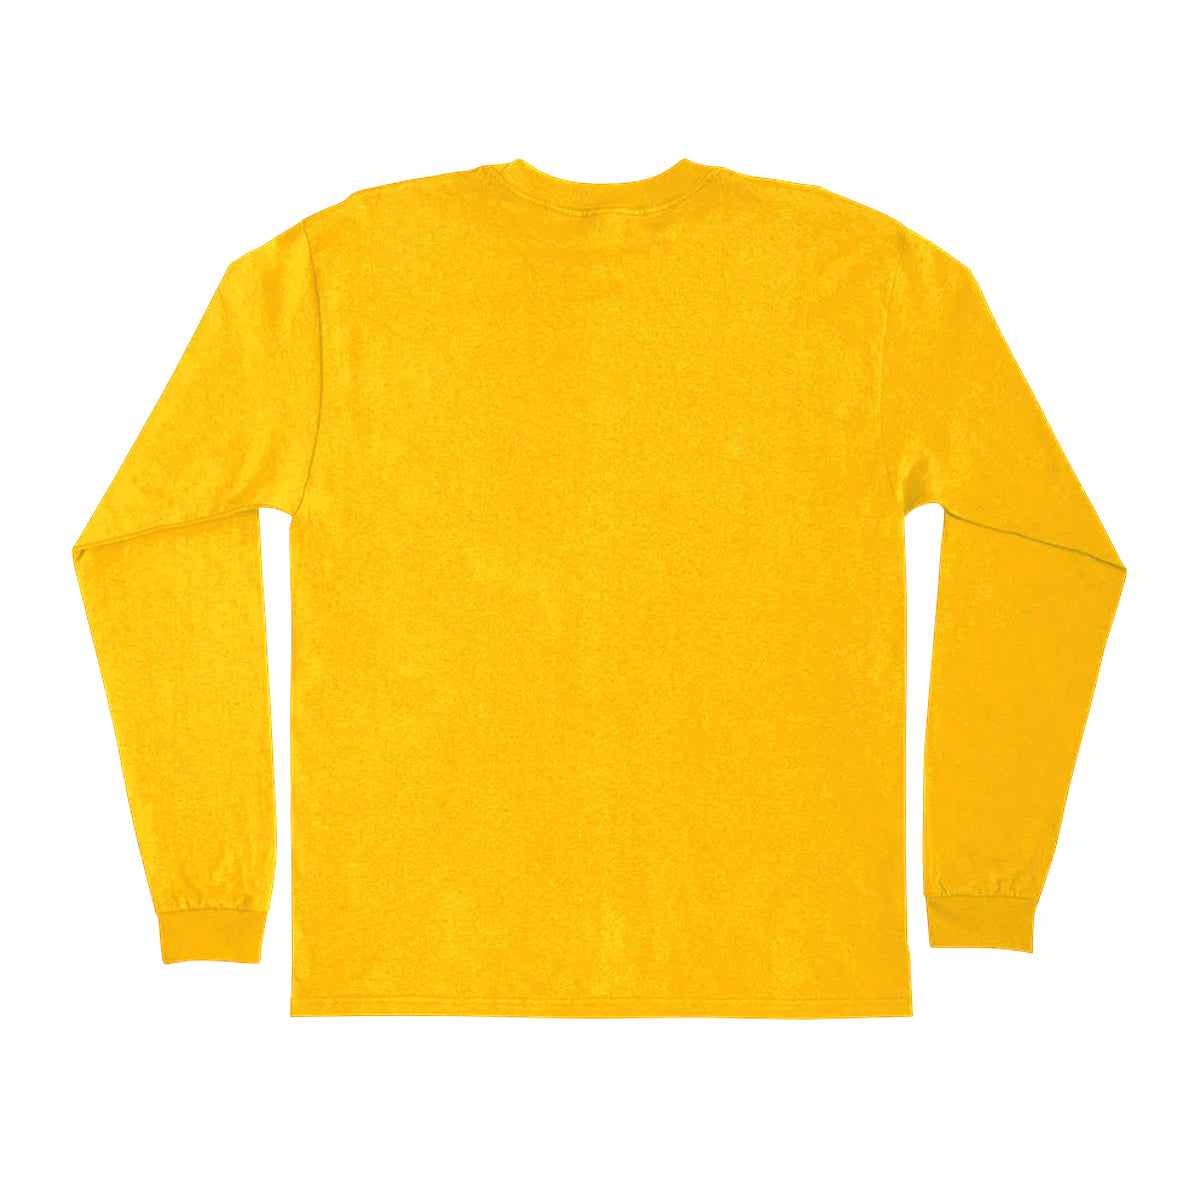 Creature Teen Fiend Long Sleeve Shirt (Gold) - Apple Valley Emporium